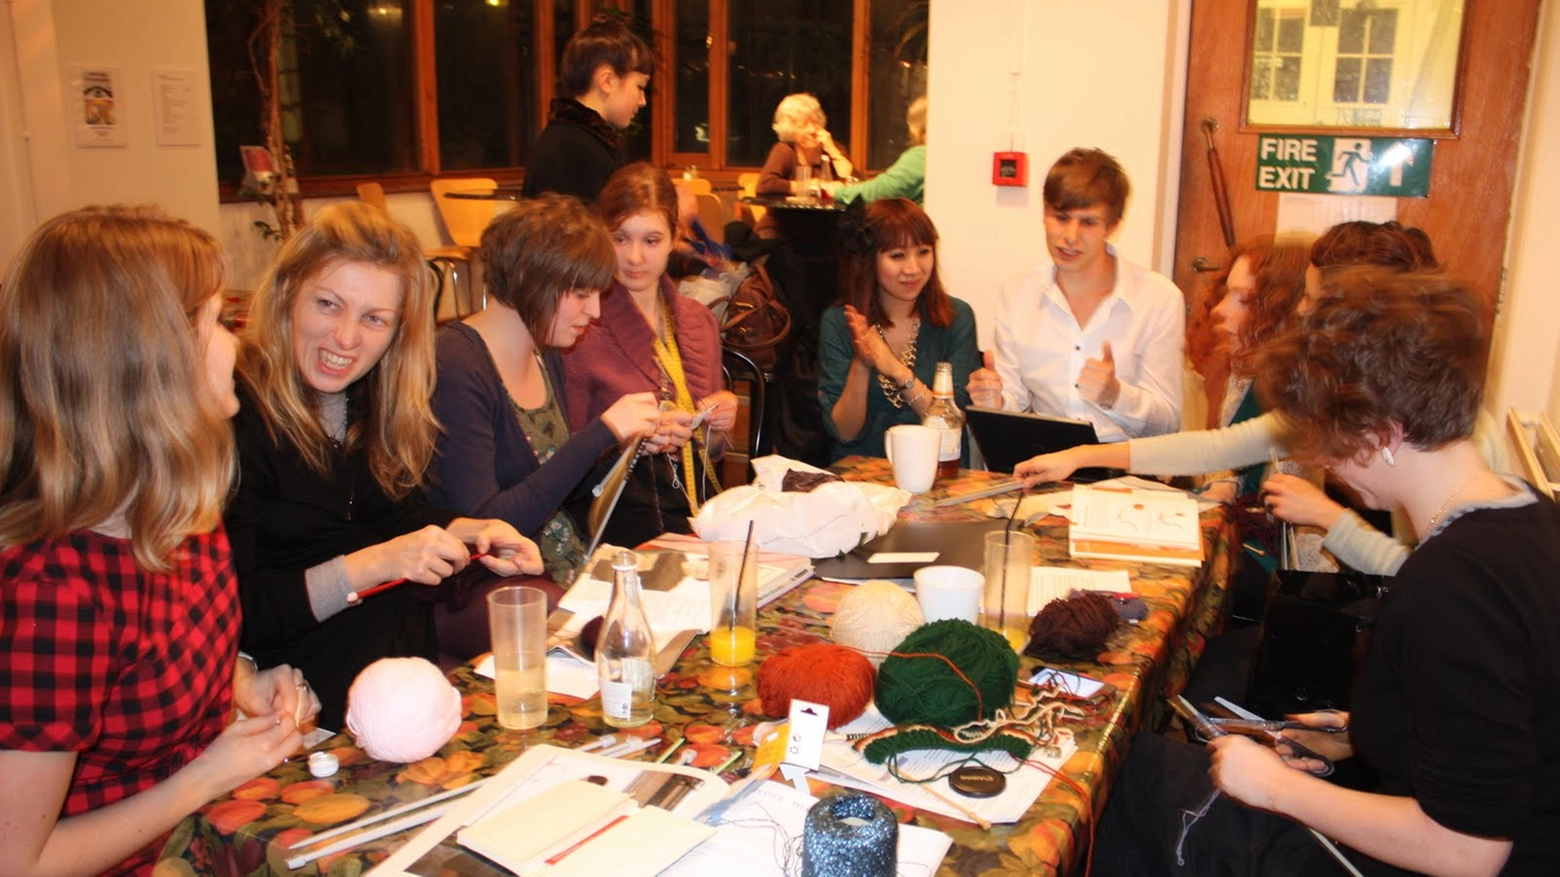 "Arm knitting fever" si svolgerà alla caffetteria Albarola sabato 14 gennaio alle 21